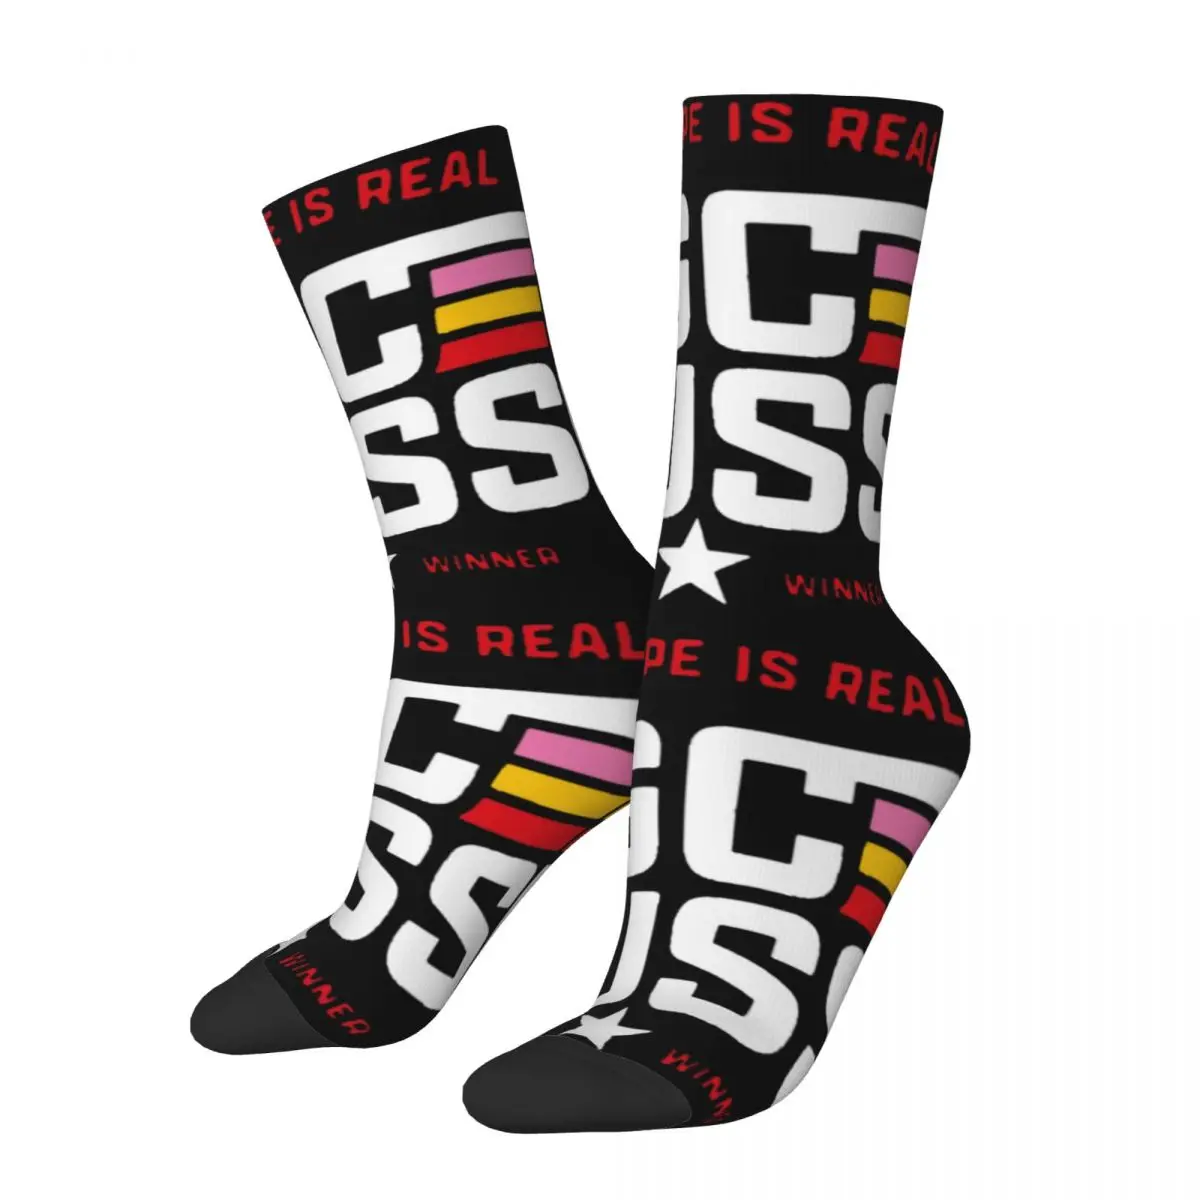 Retro Unisex Gc Kuss Biker Sepp Kuss Vuelta Winner Design Socks Product Print Socks Comfortable Best Gift Idea